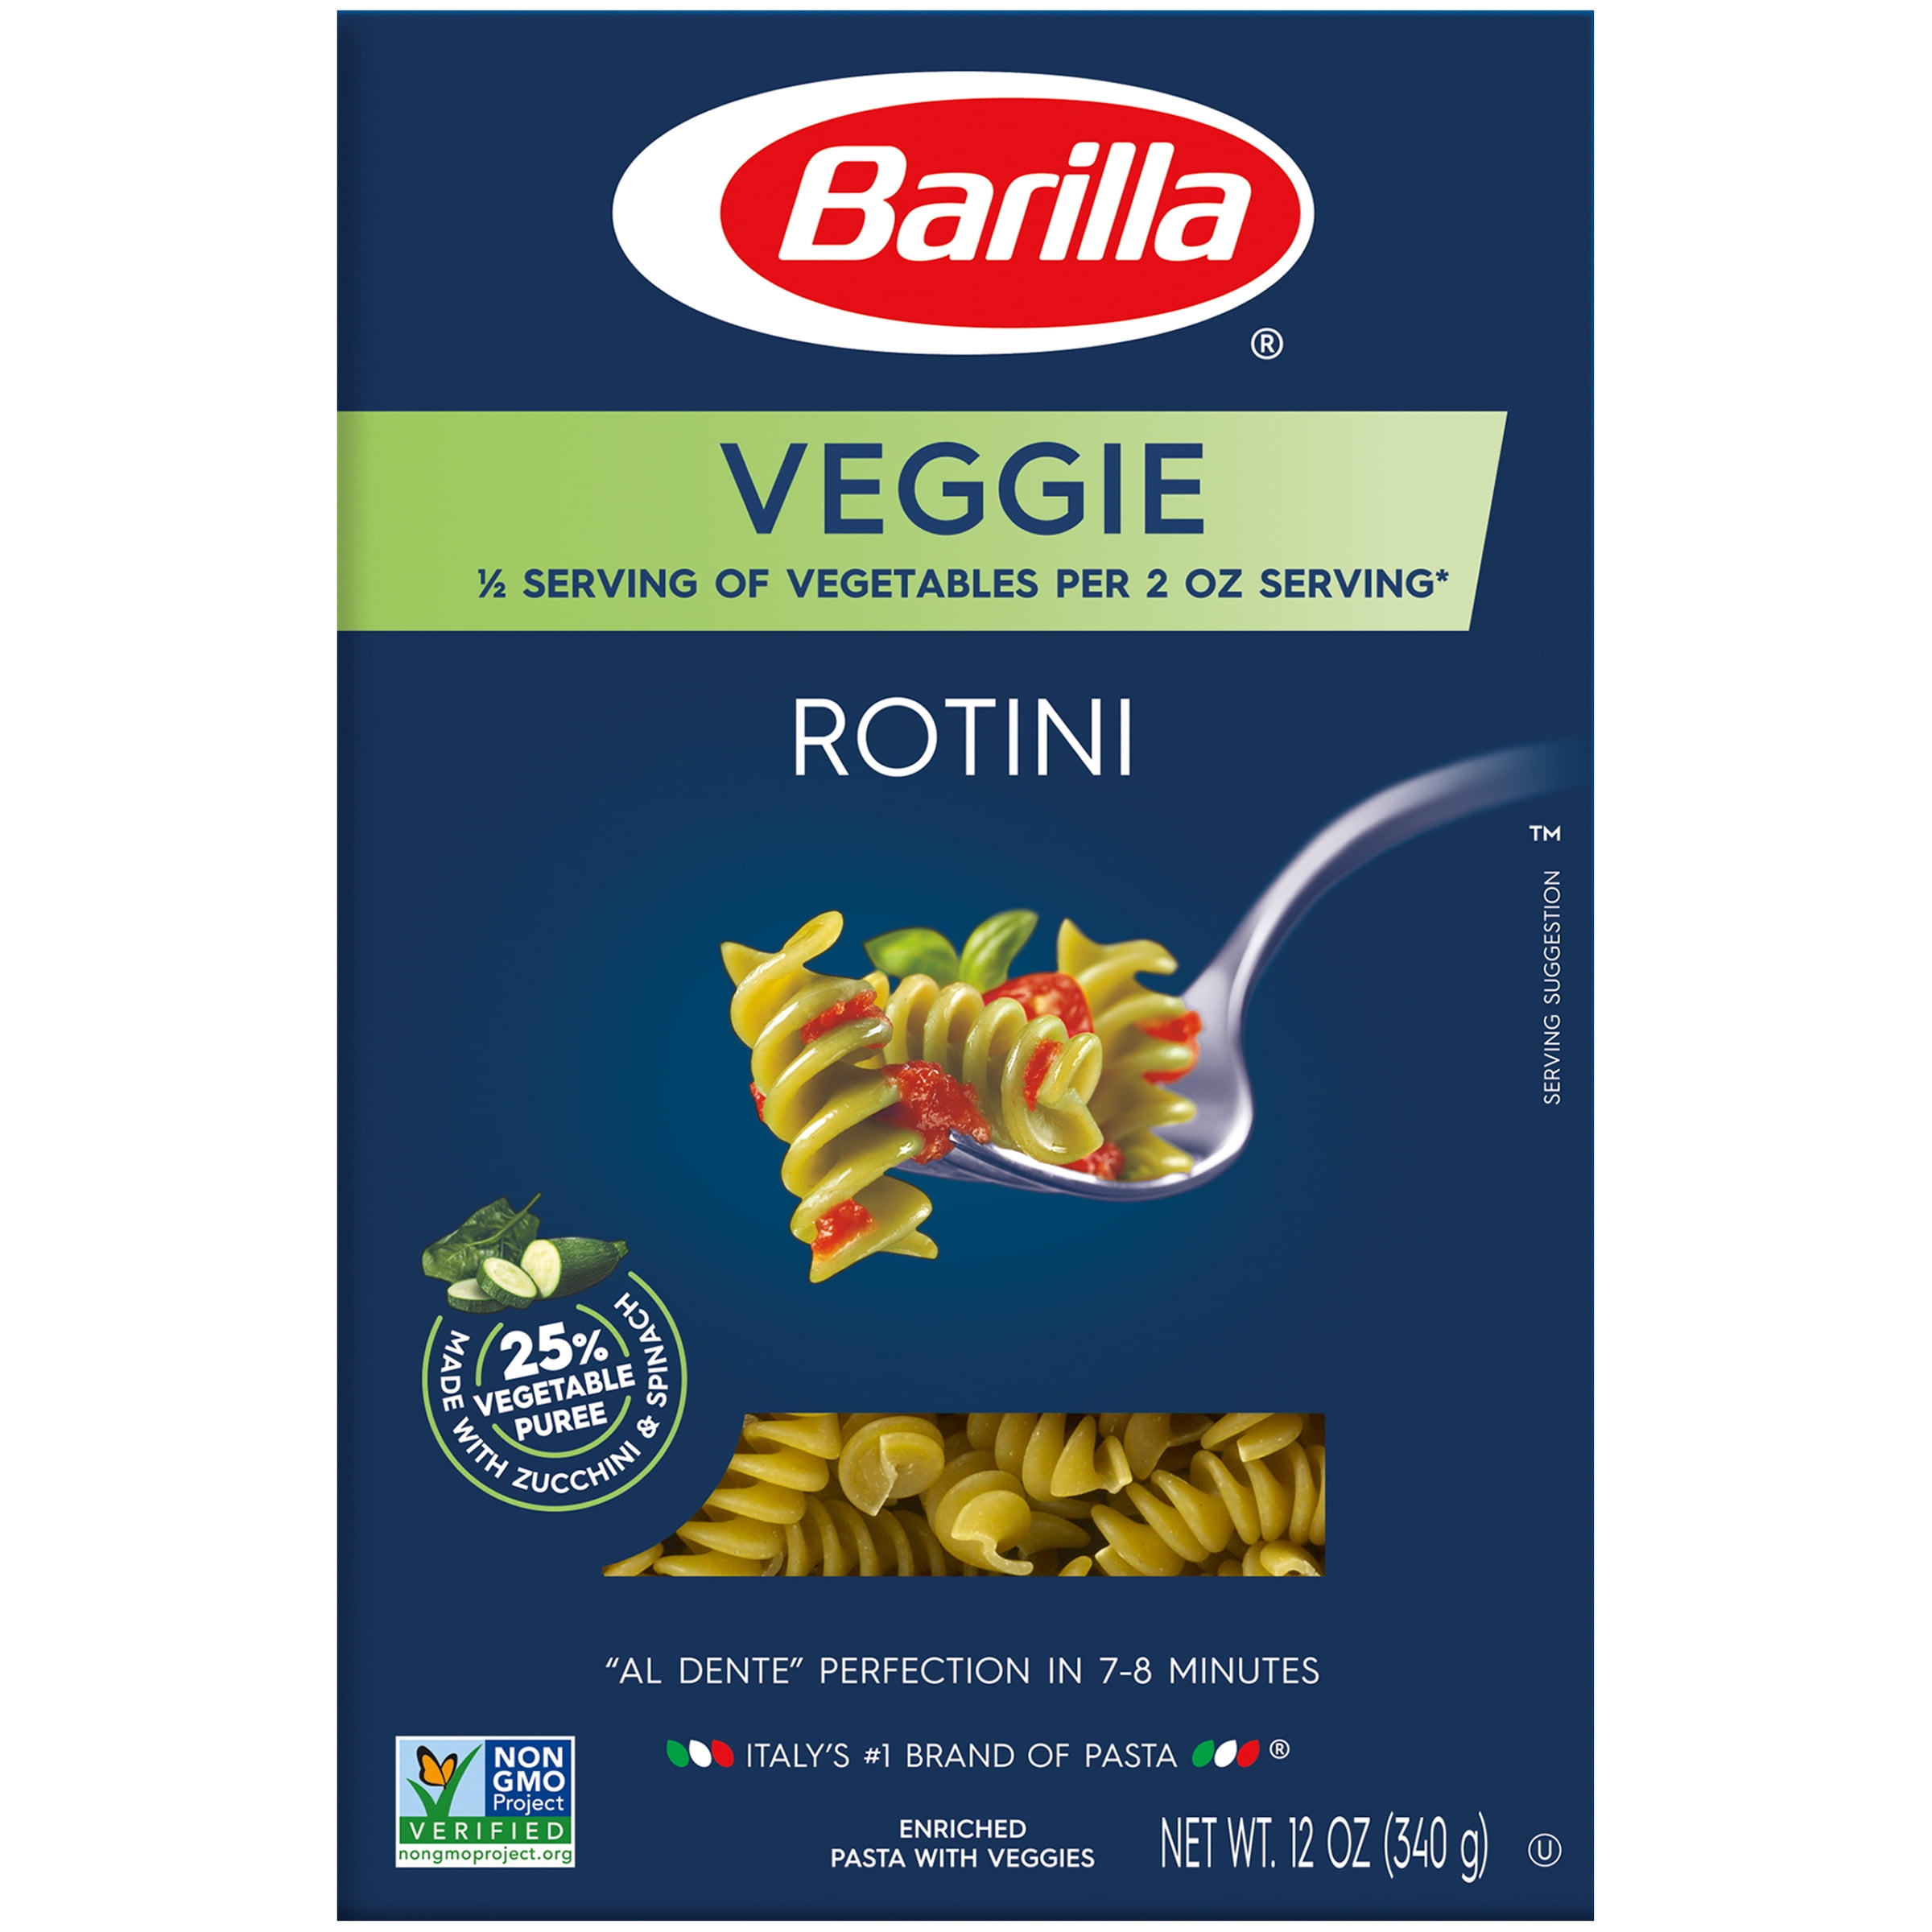 Barilla® Veggie Rotini Pasta 12 oz. Box